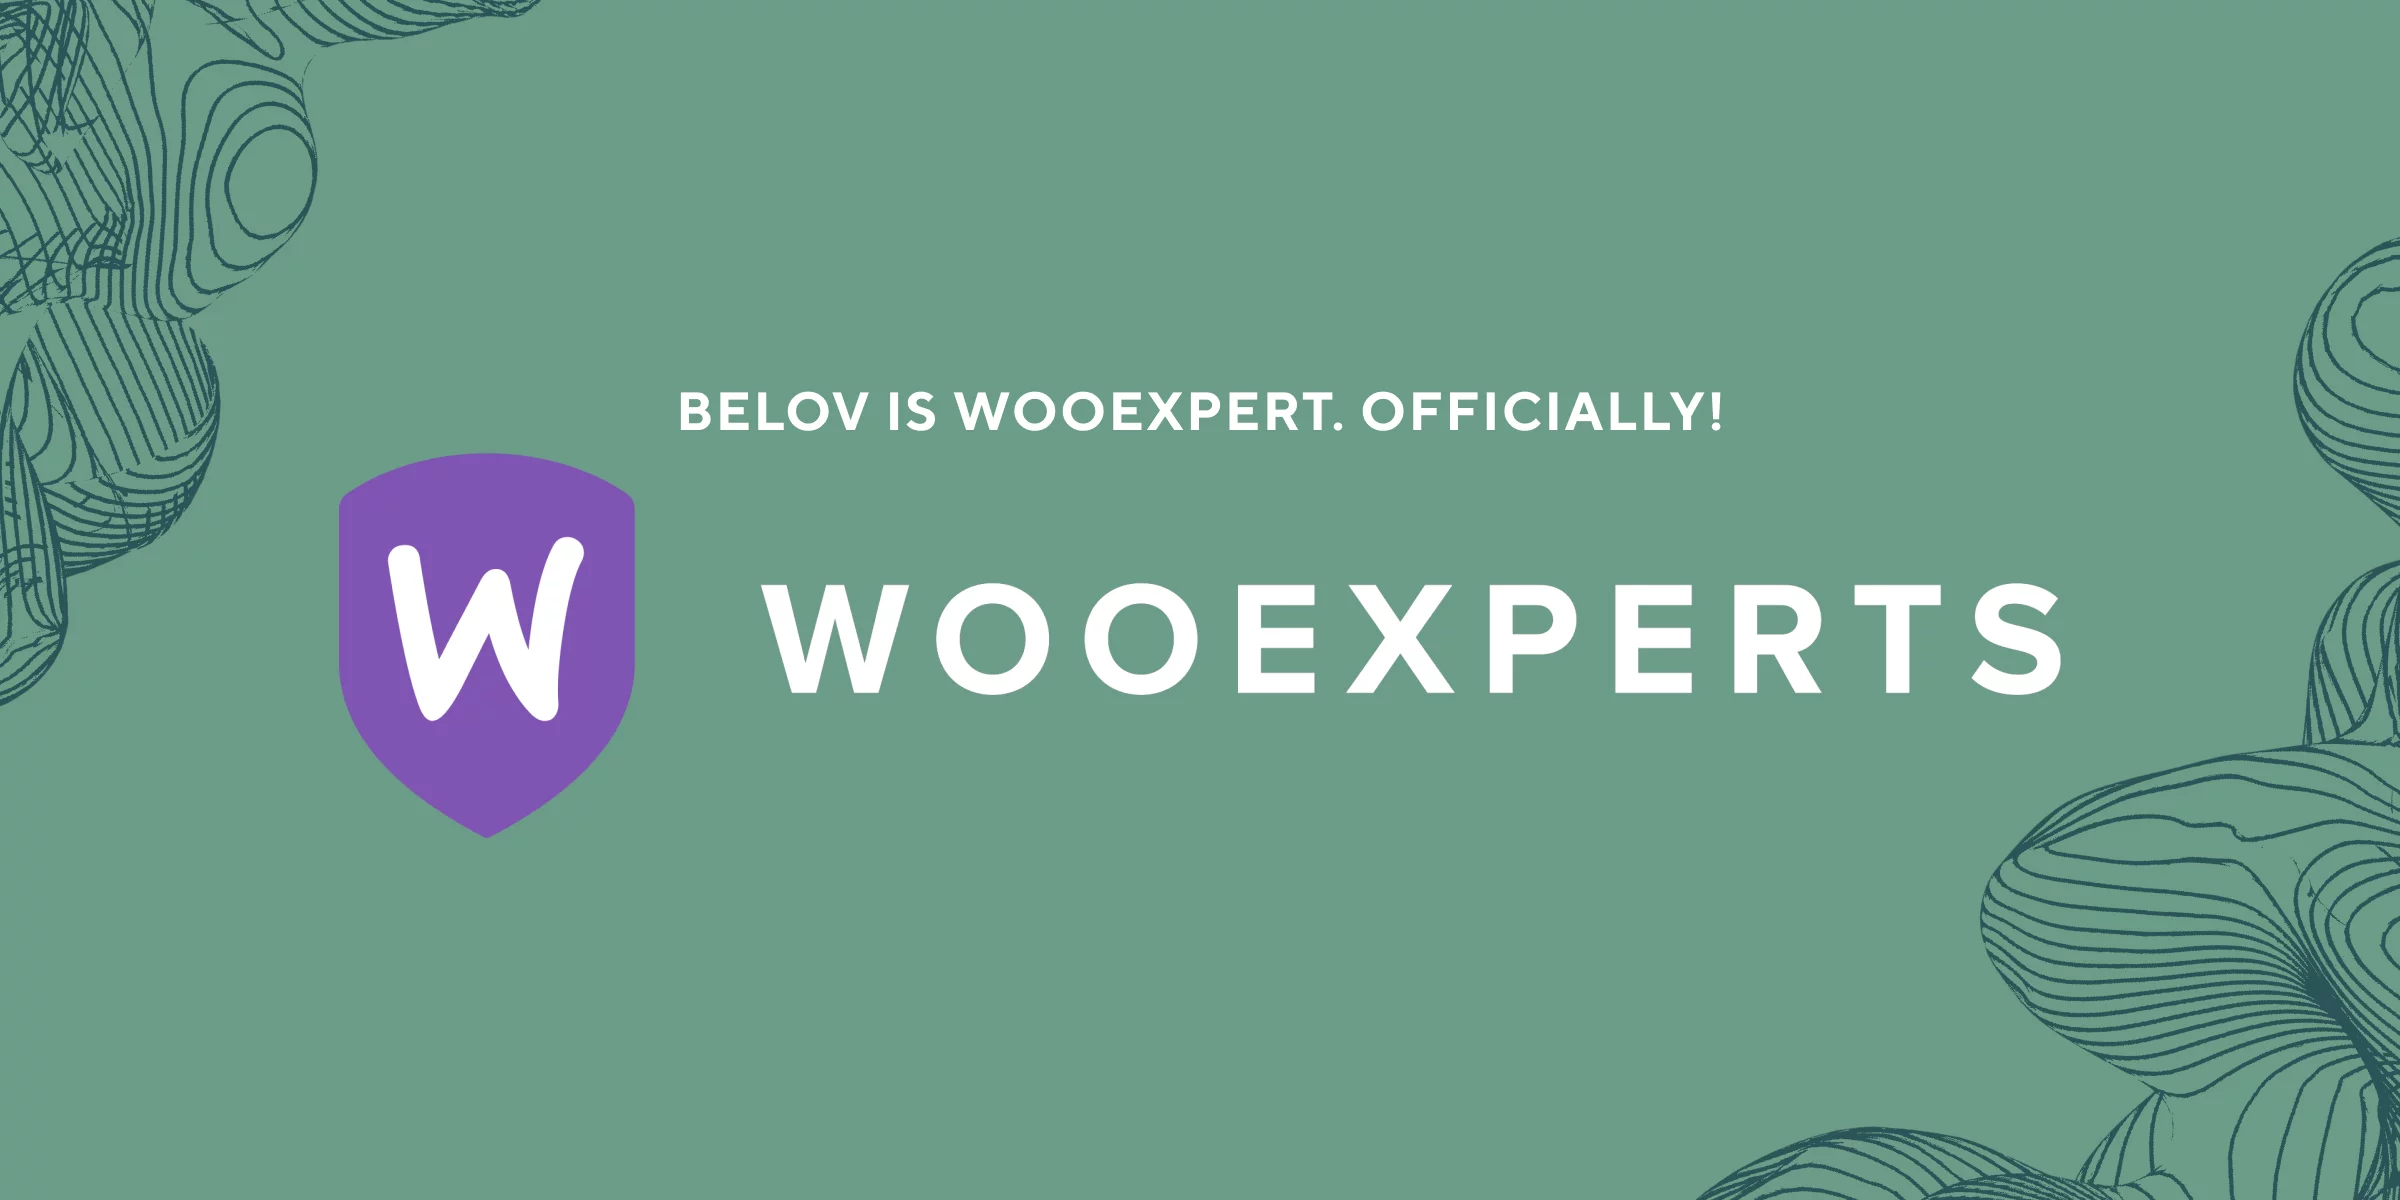 belov digital agency is WooExpert now. Officially!